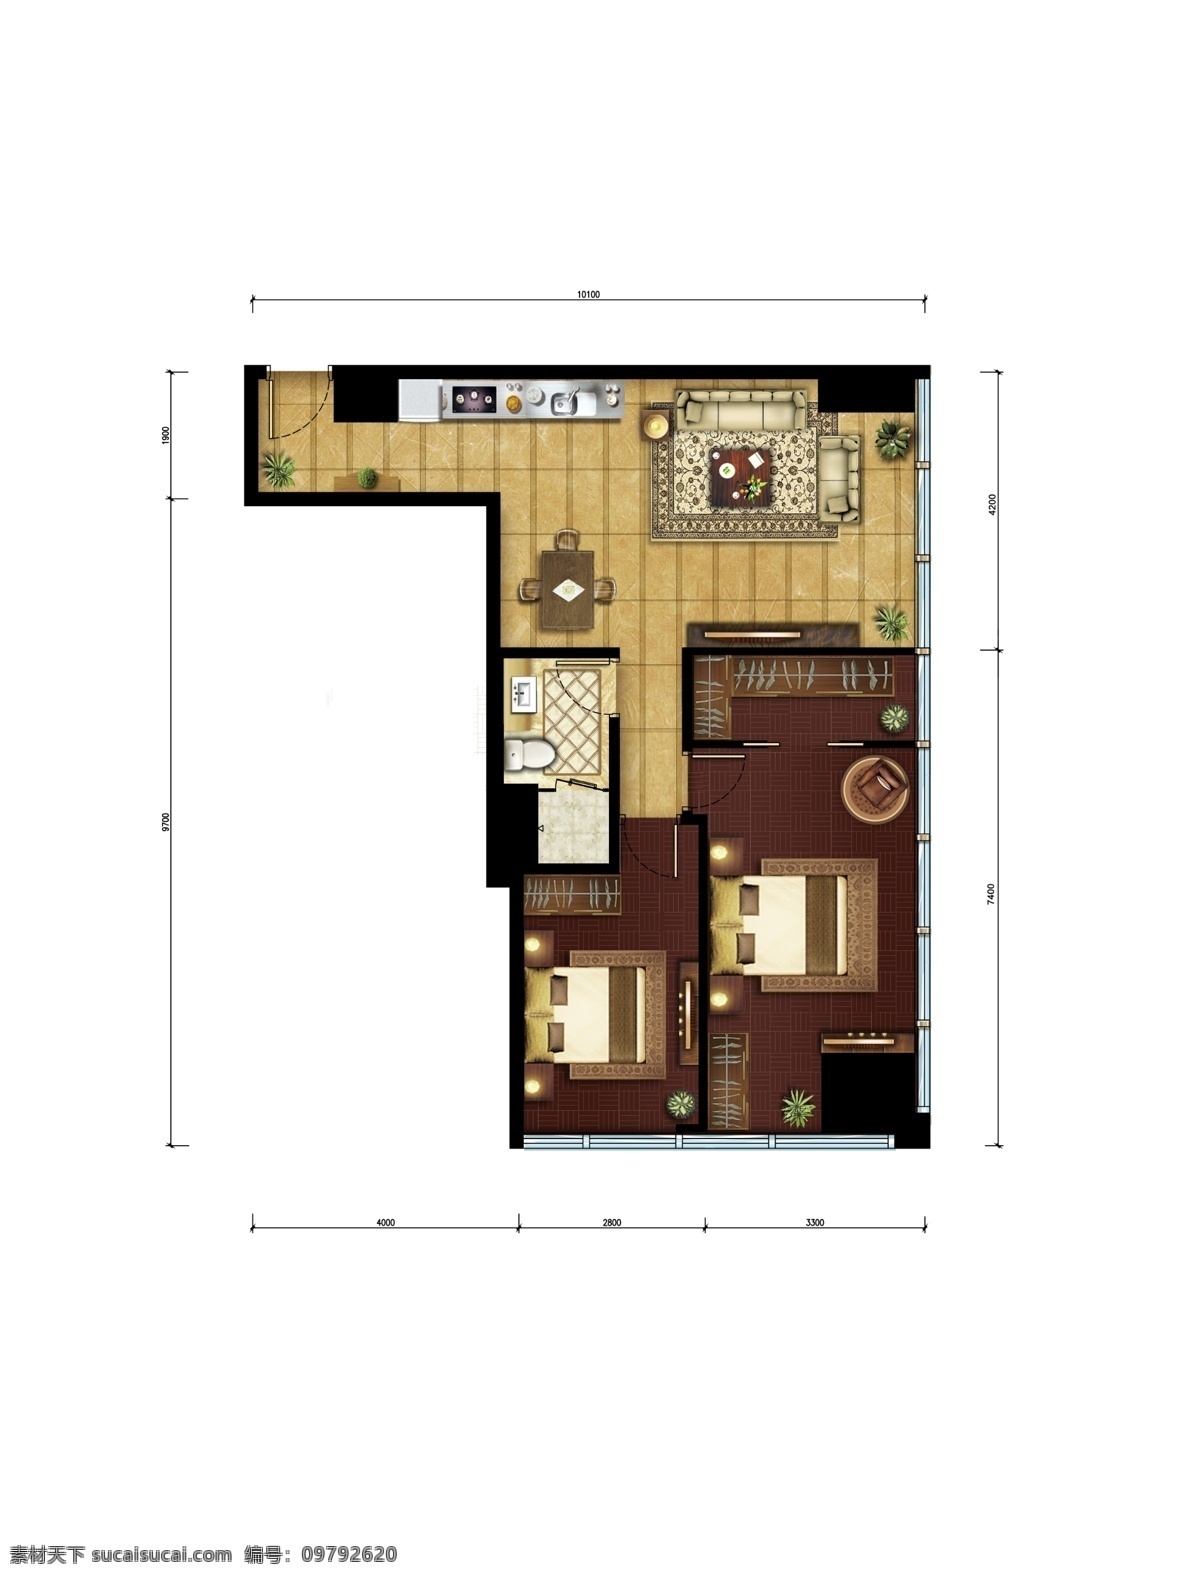 维多利亚 公寓 户型 图二 图 五 组 家装家配图 户型素材